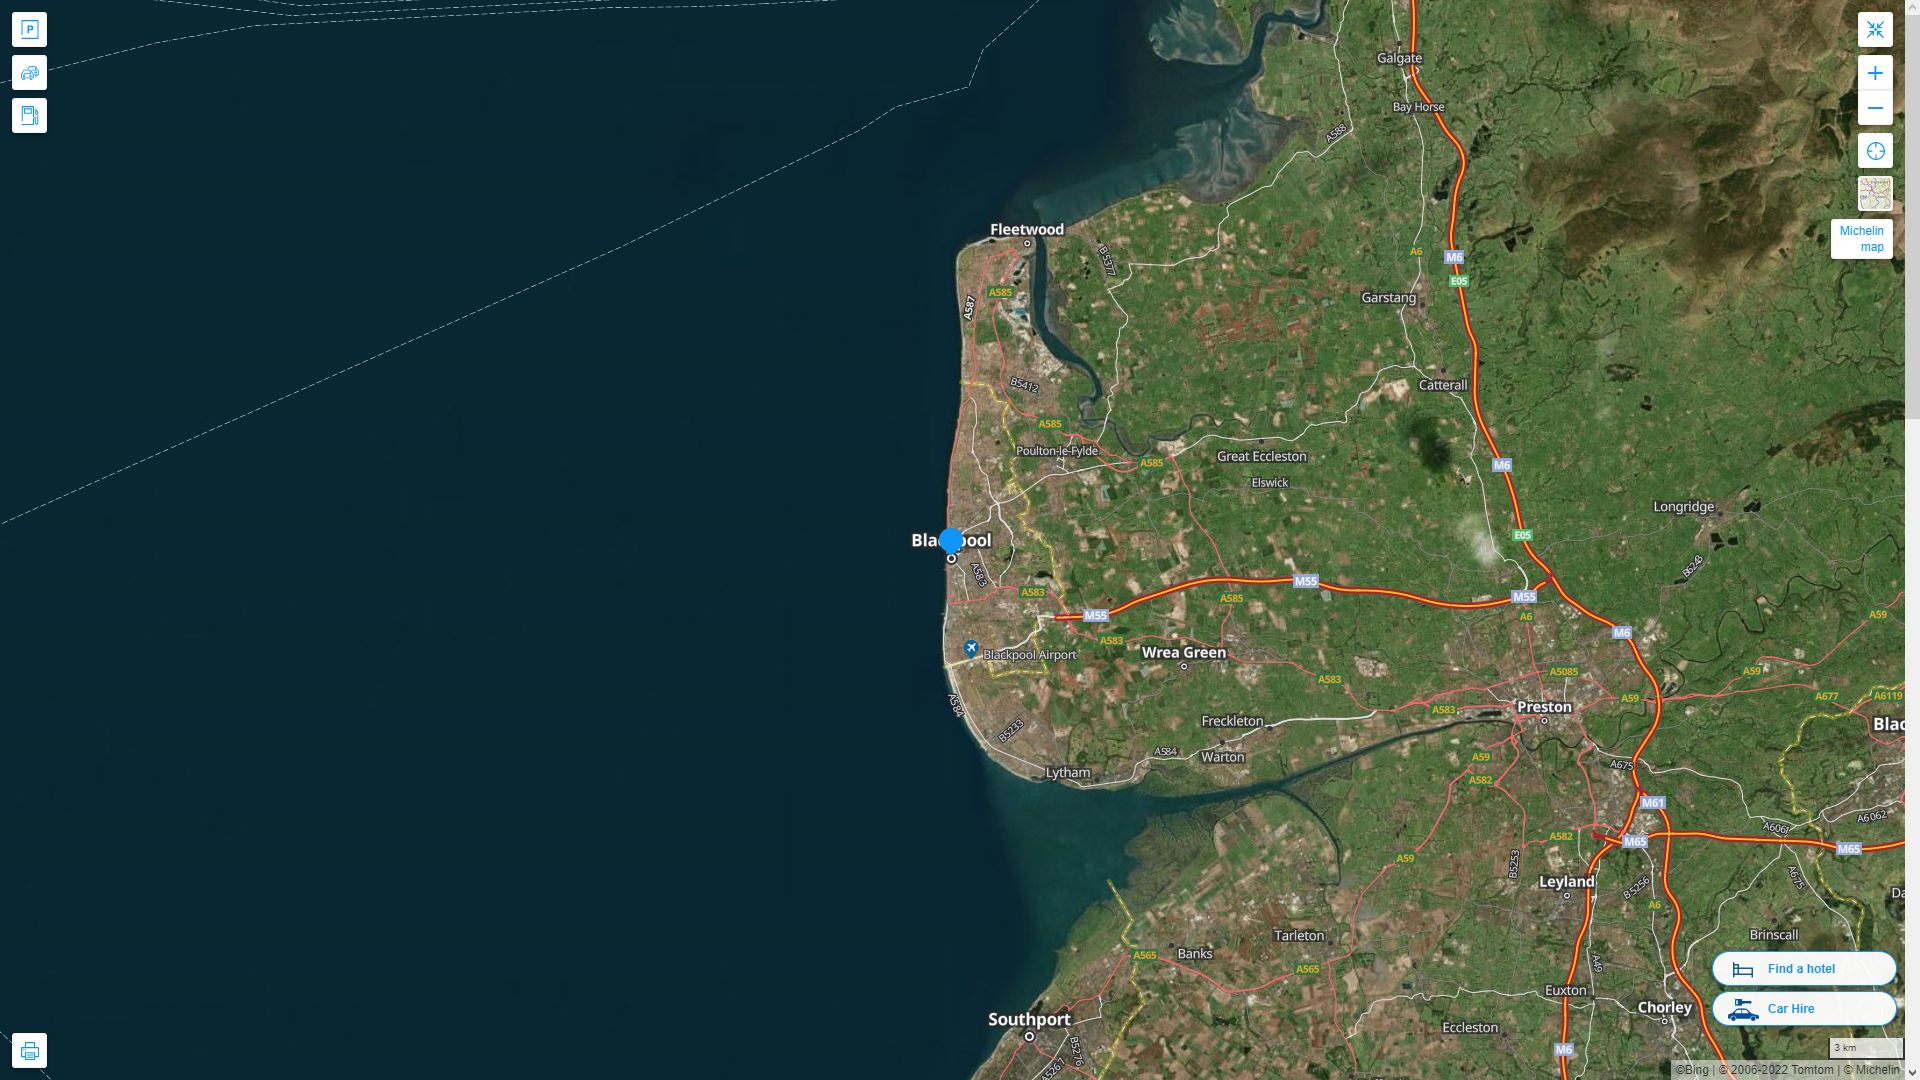 Blackpool Royaume Uni Autoroute et carte routiere avec vue satellite